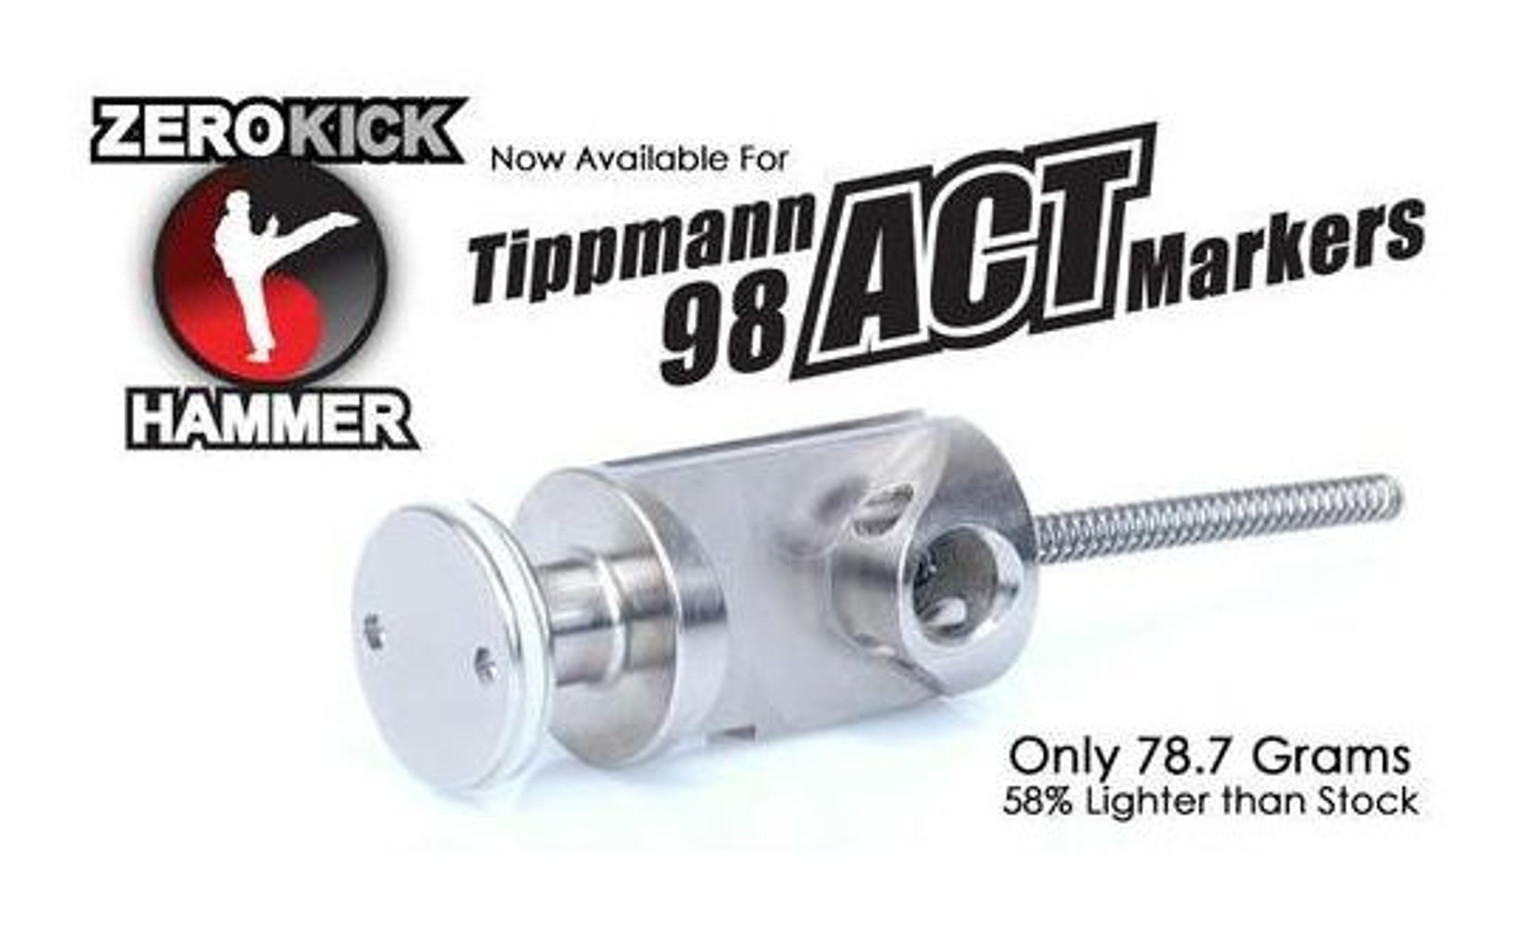 TechT Tippmann 98 Zero Kick ACT Hammer